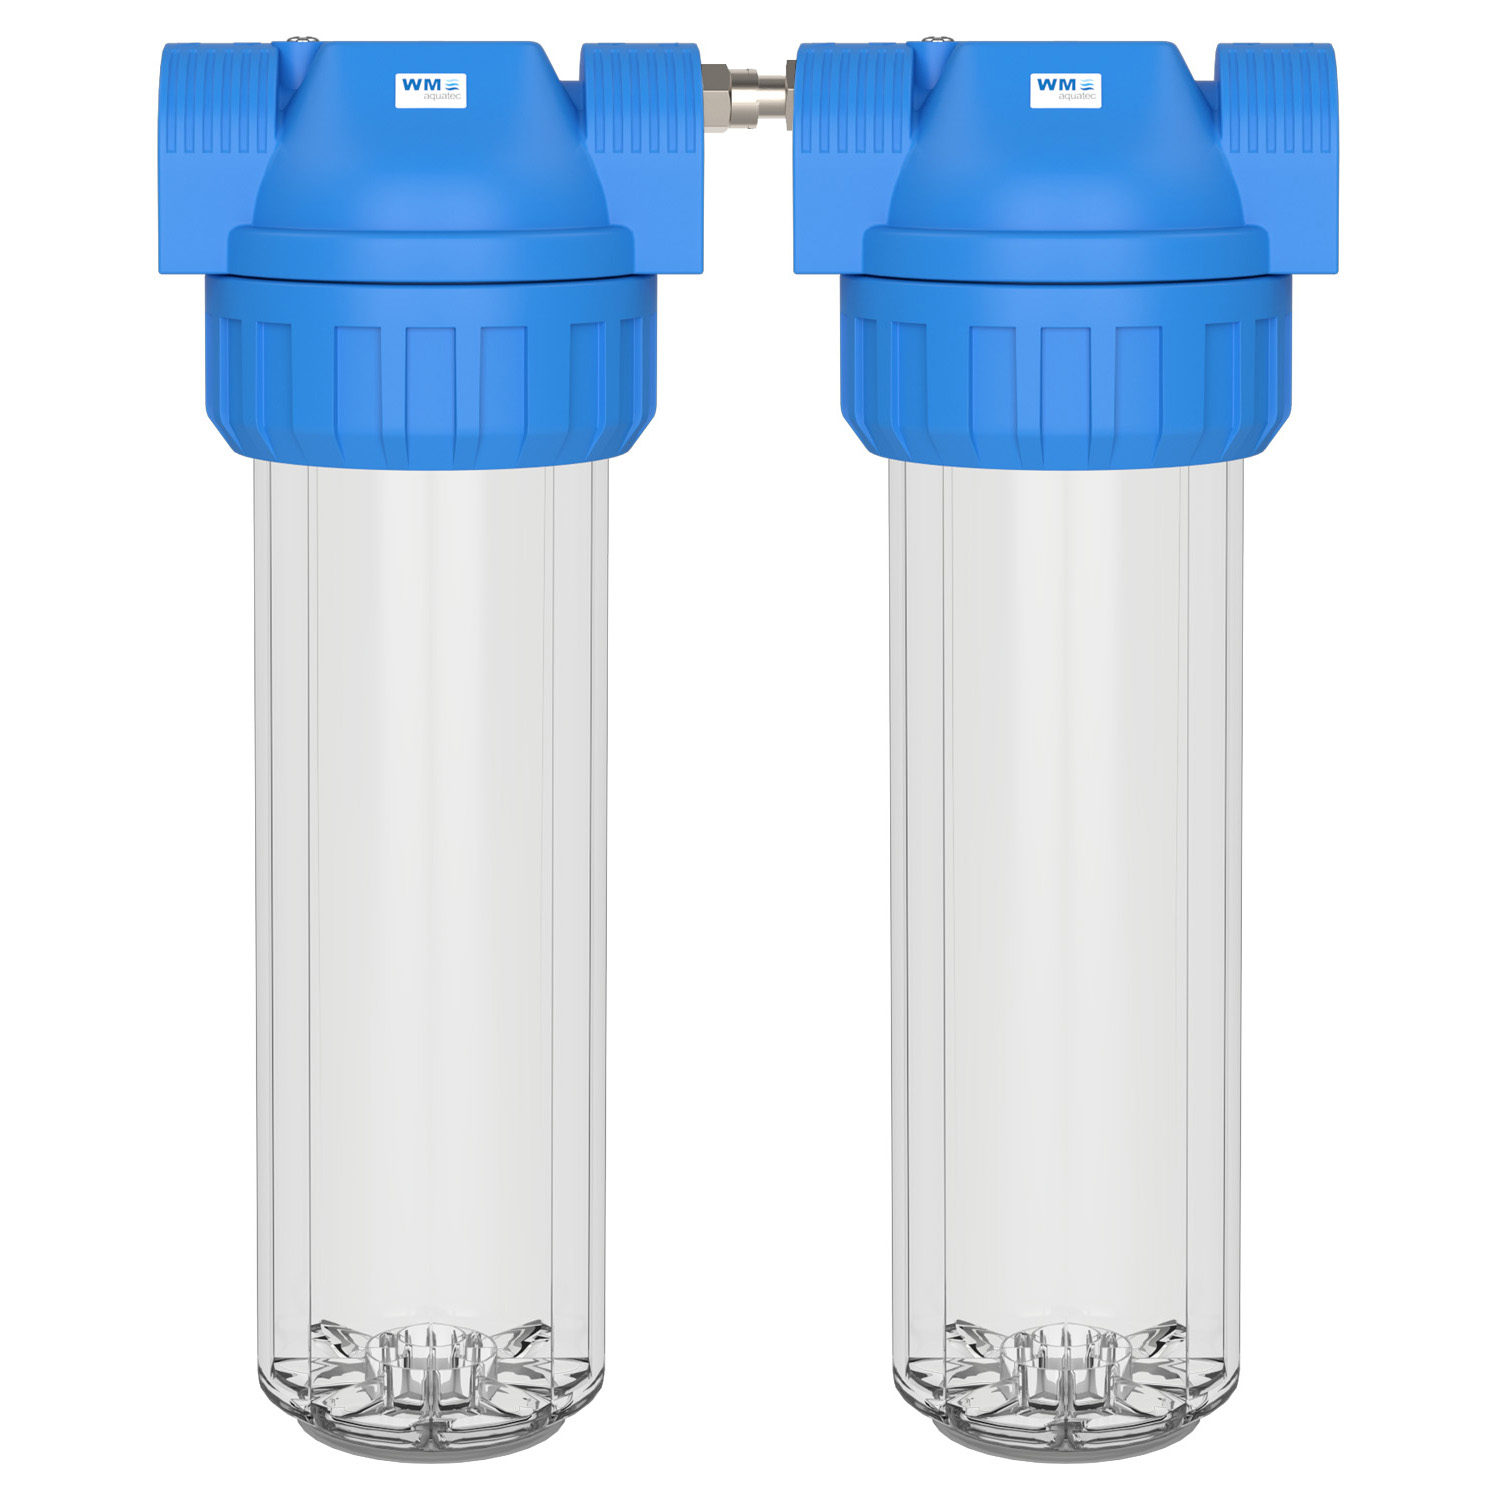 Doppel-Filtergehäuse (Größe M) – WM aquatec